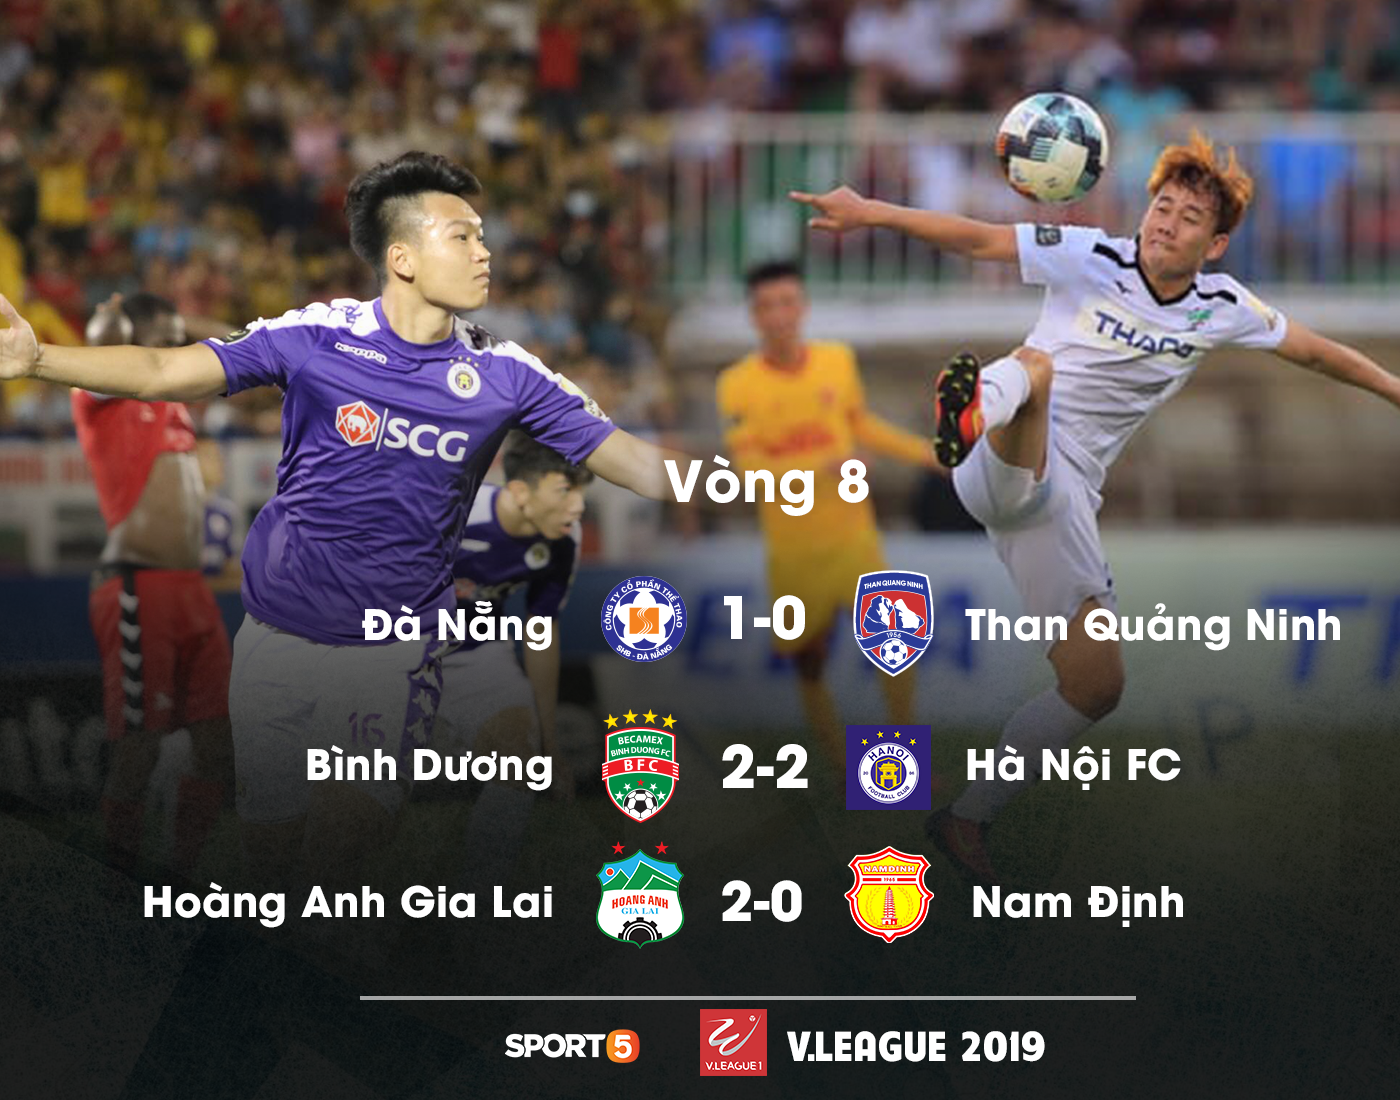 Vòng 8 V.League 2019: Các tuyển thủ U23 Việt Nam thi nhau lập siêu phẩm - Ảnh 3.